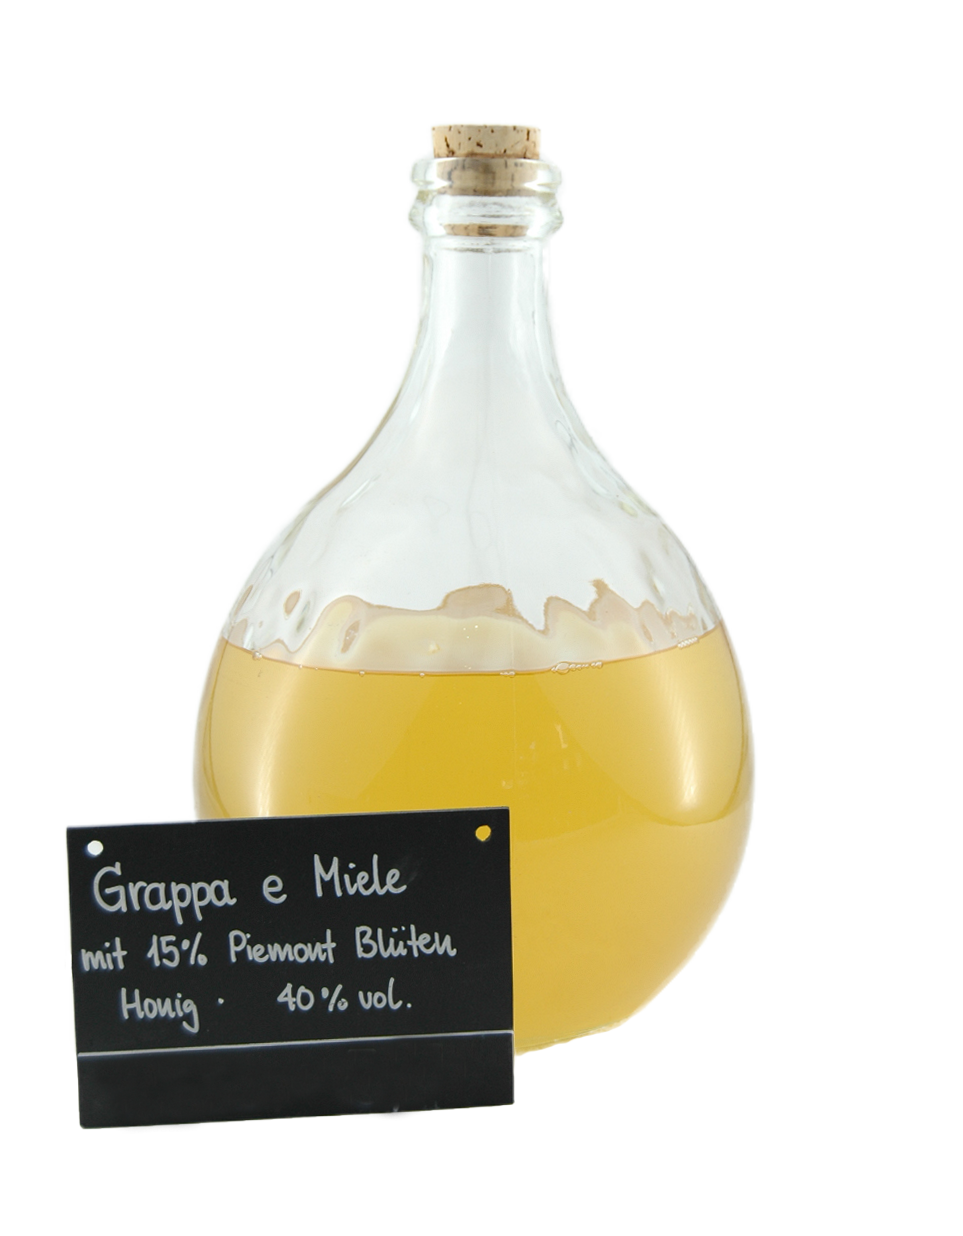 Grappa e Miele - Honiggrappa - 500ml